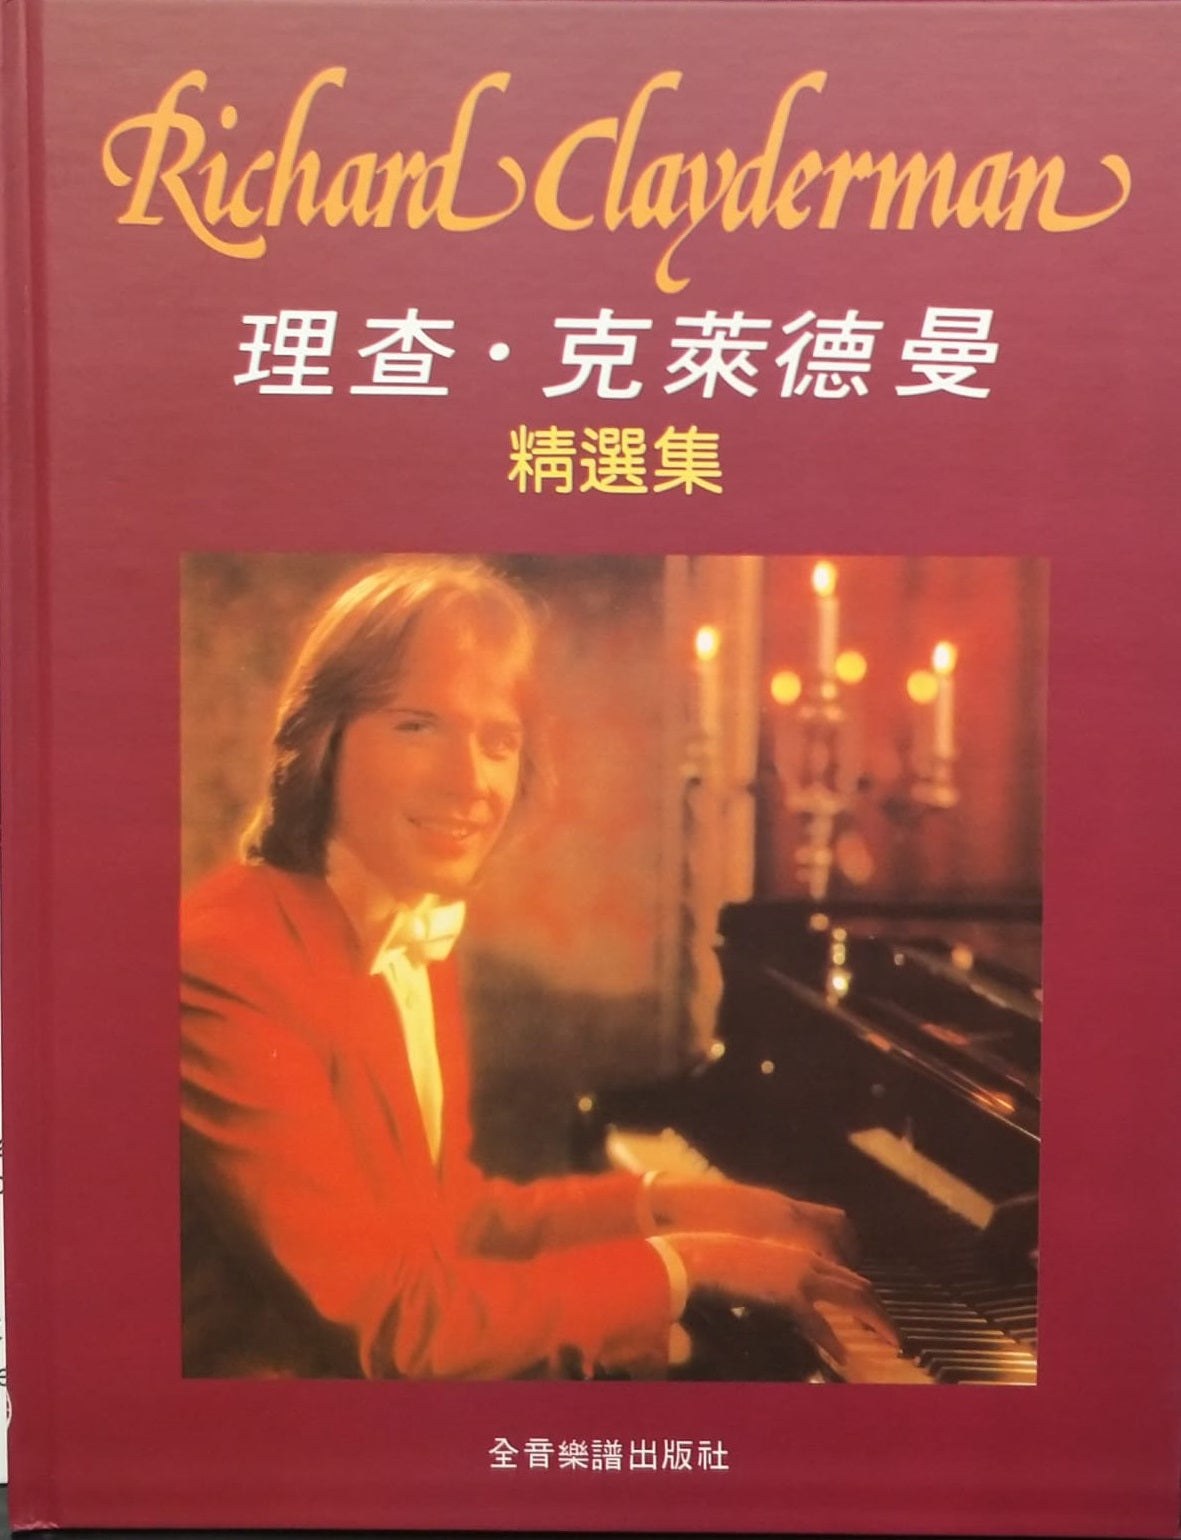 理查克萊德曼精選鋼琴暢銷曲集(精選集)